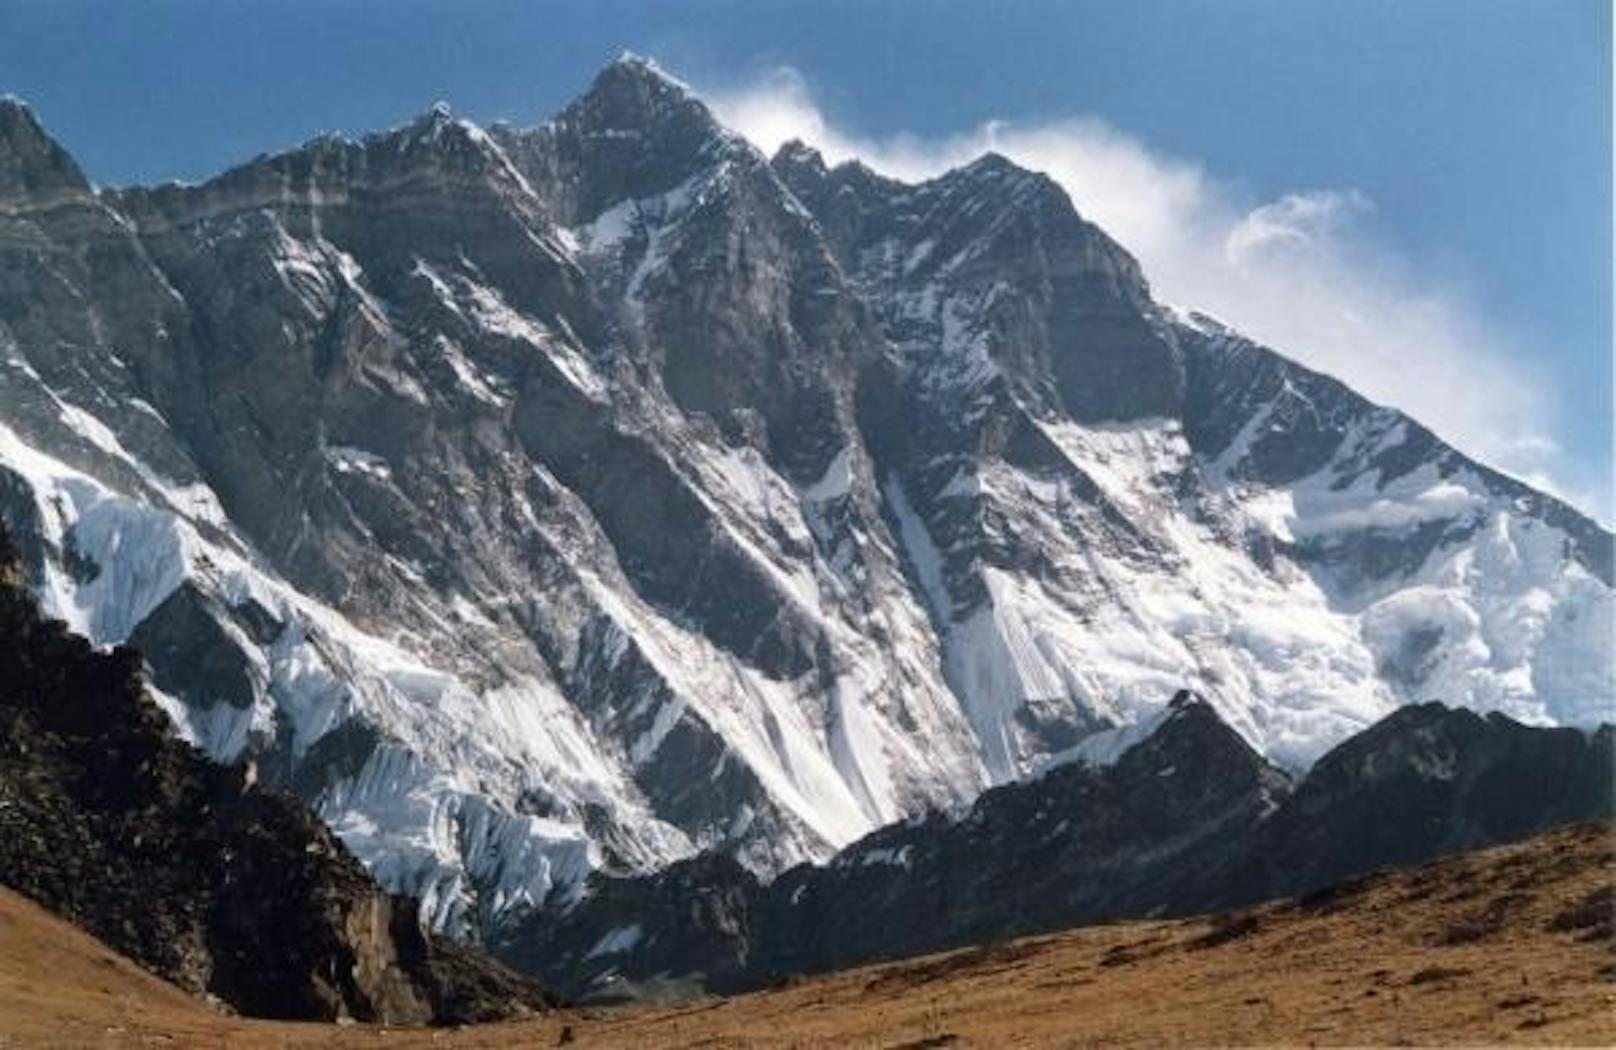 <b>Alternative:</b> Warum nicht den Lhotse Middle besteigen? Mit 8414 Metern auch eine wunderbare Herausforderung.